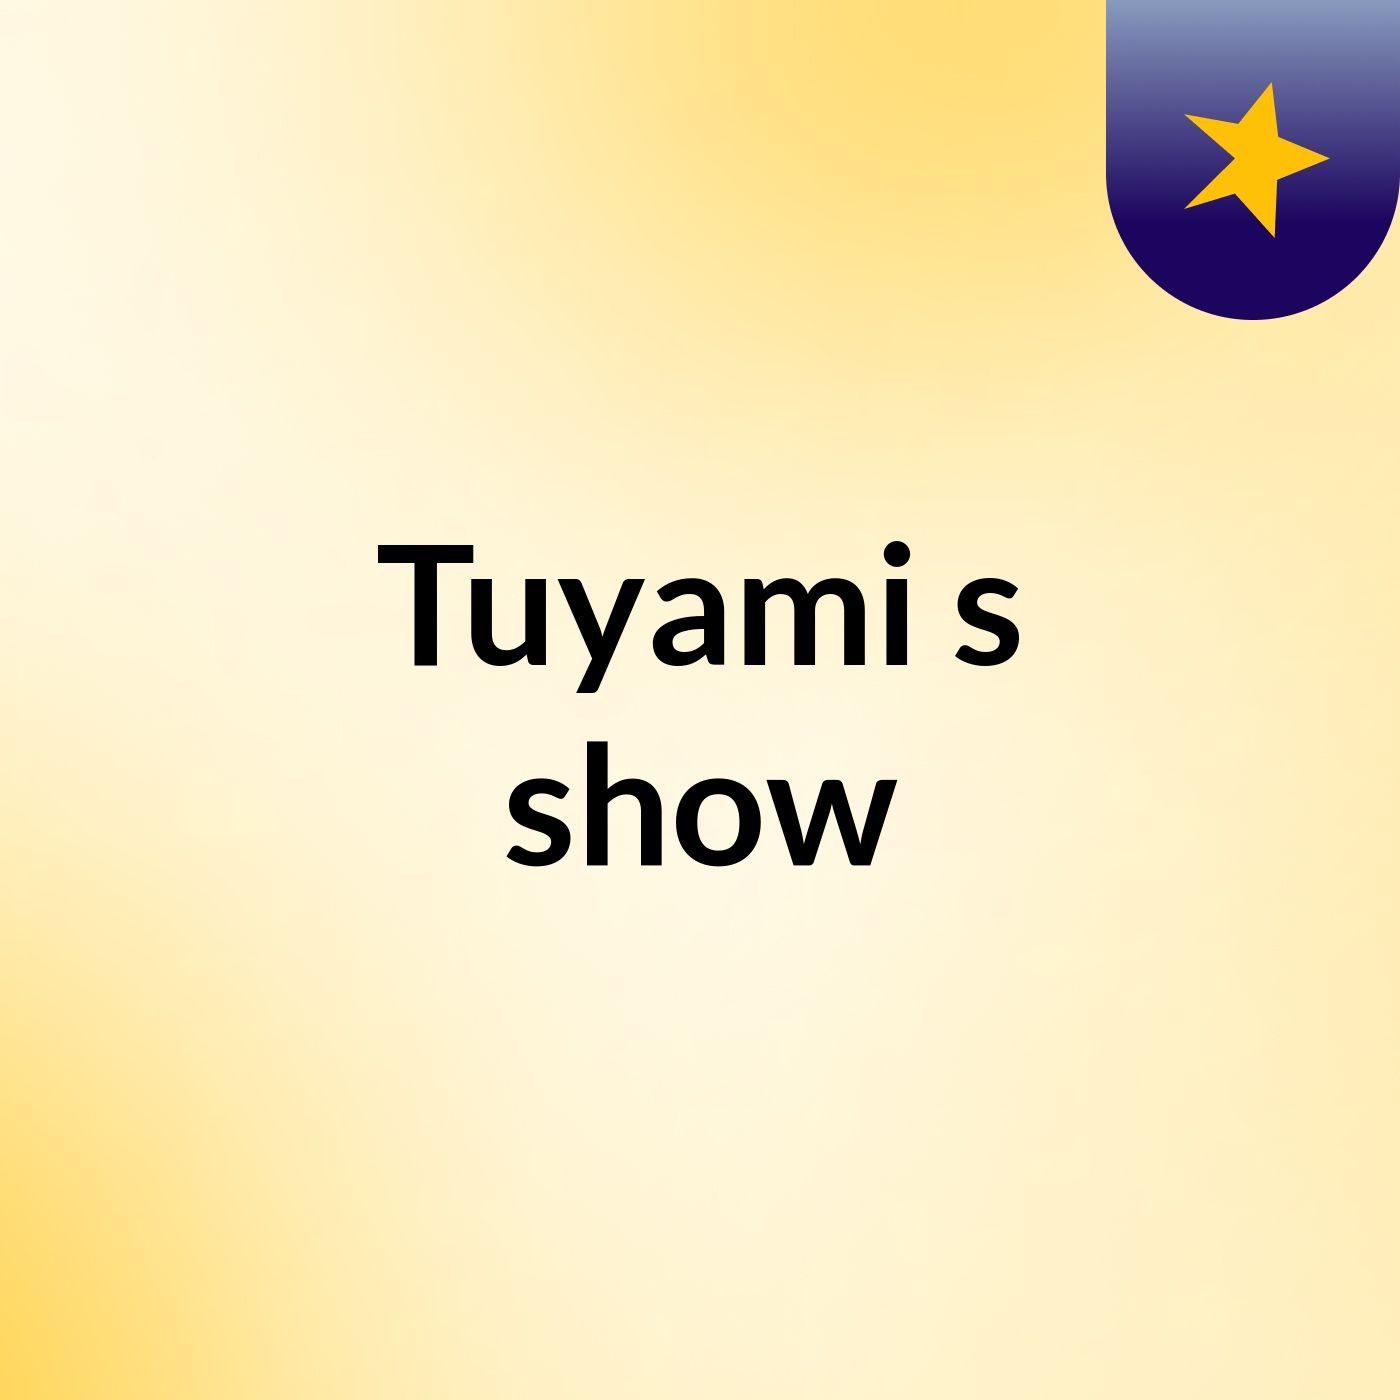 Tuyami's show